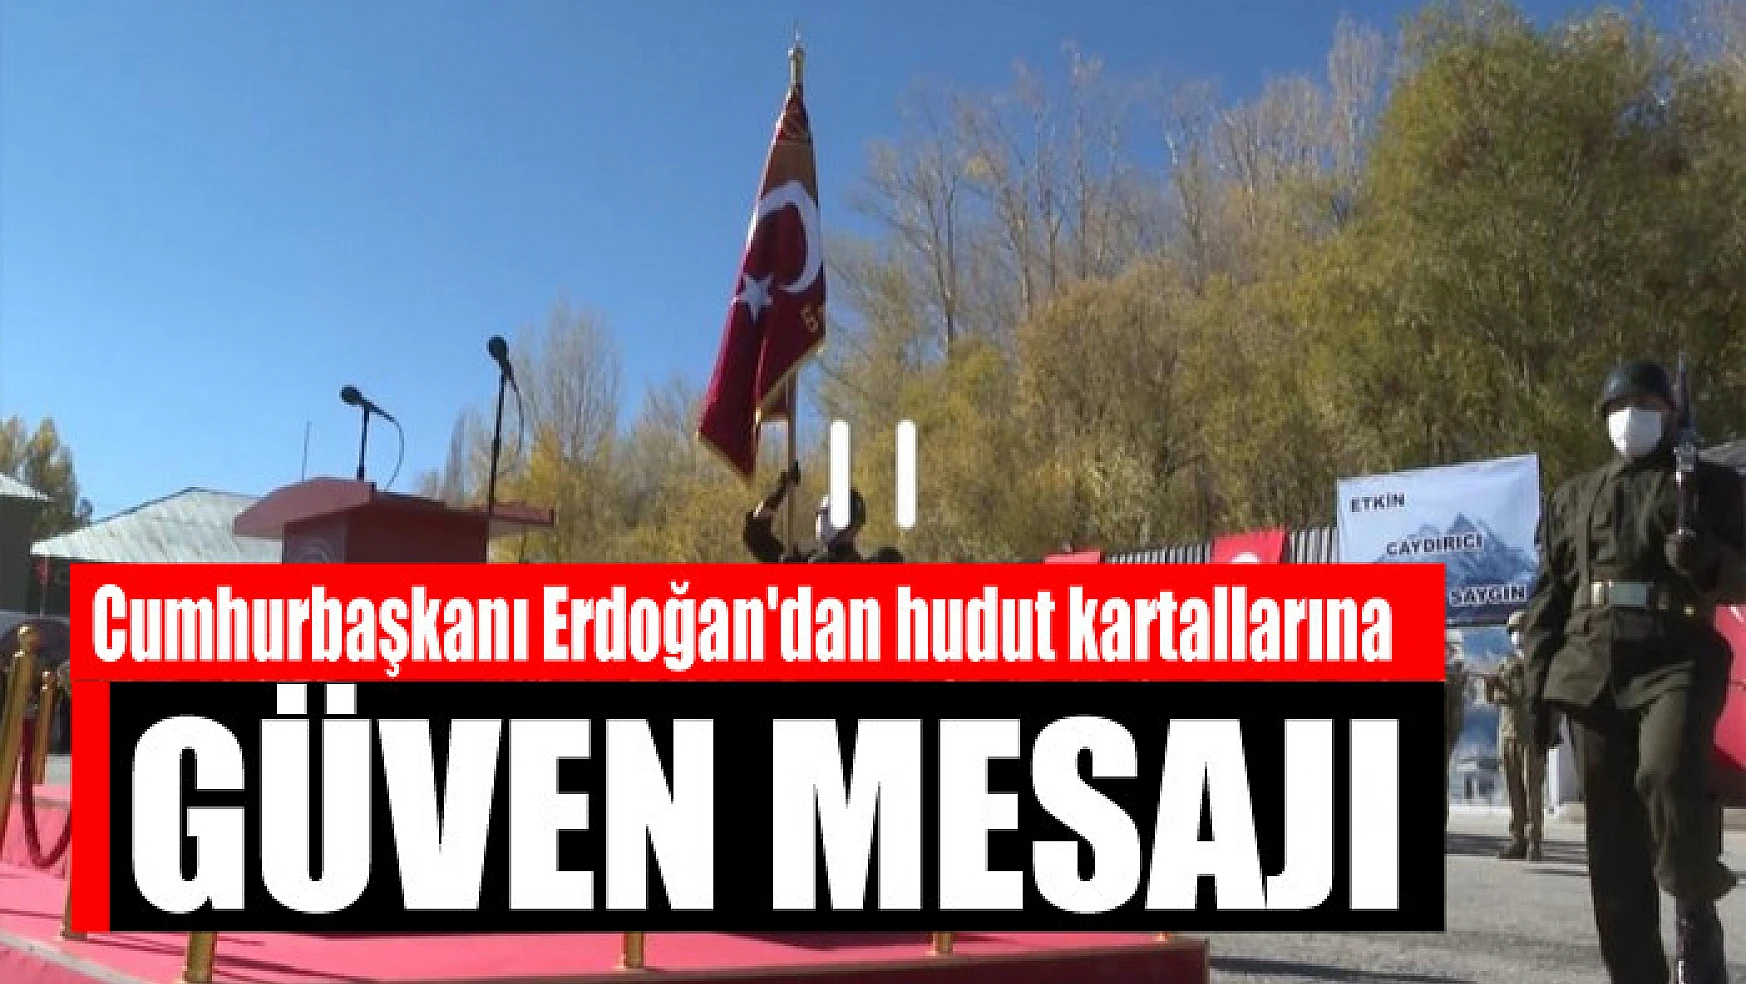 Cumhurbaşkanı Erdoğan'dan hudut kartallarına güven mesajı